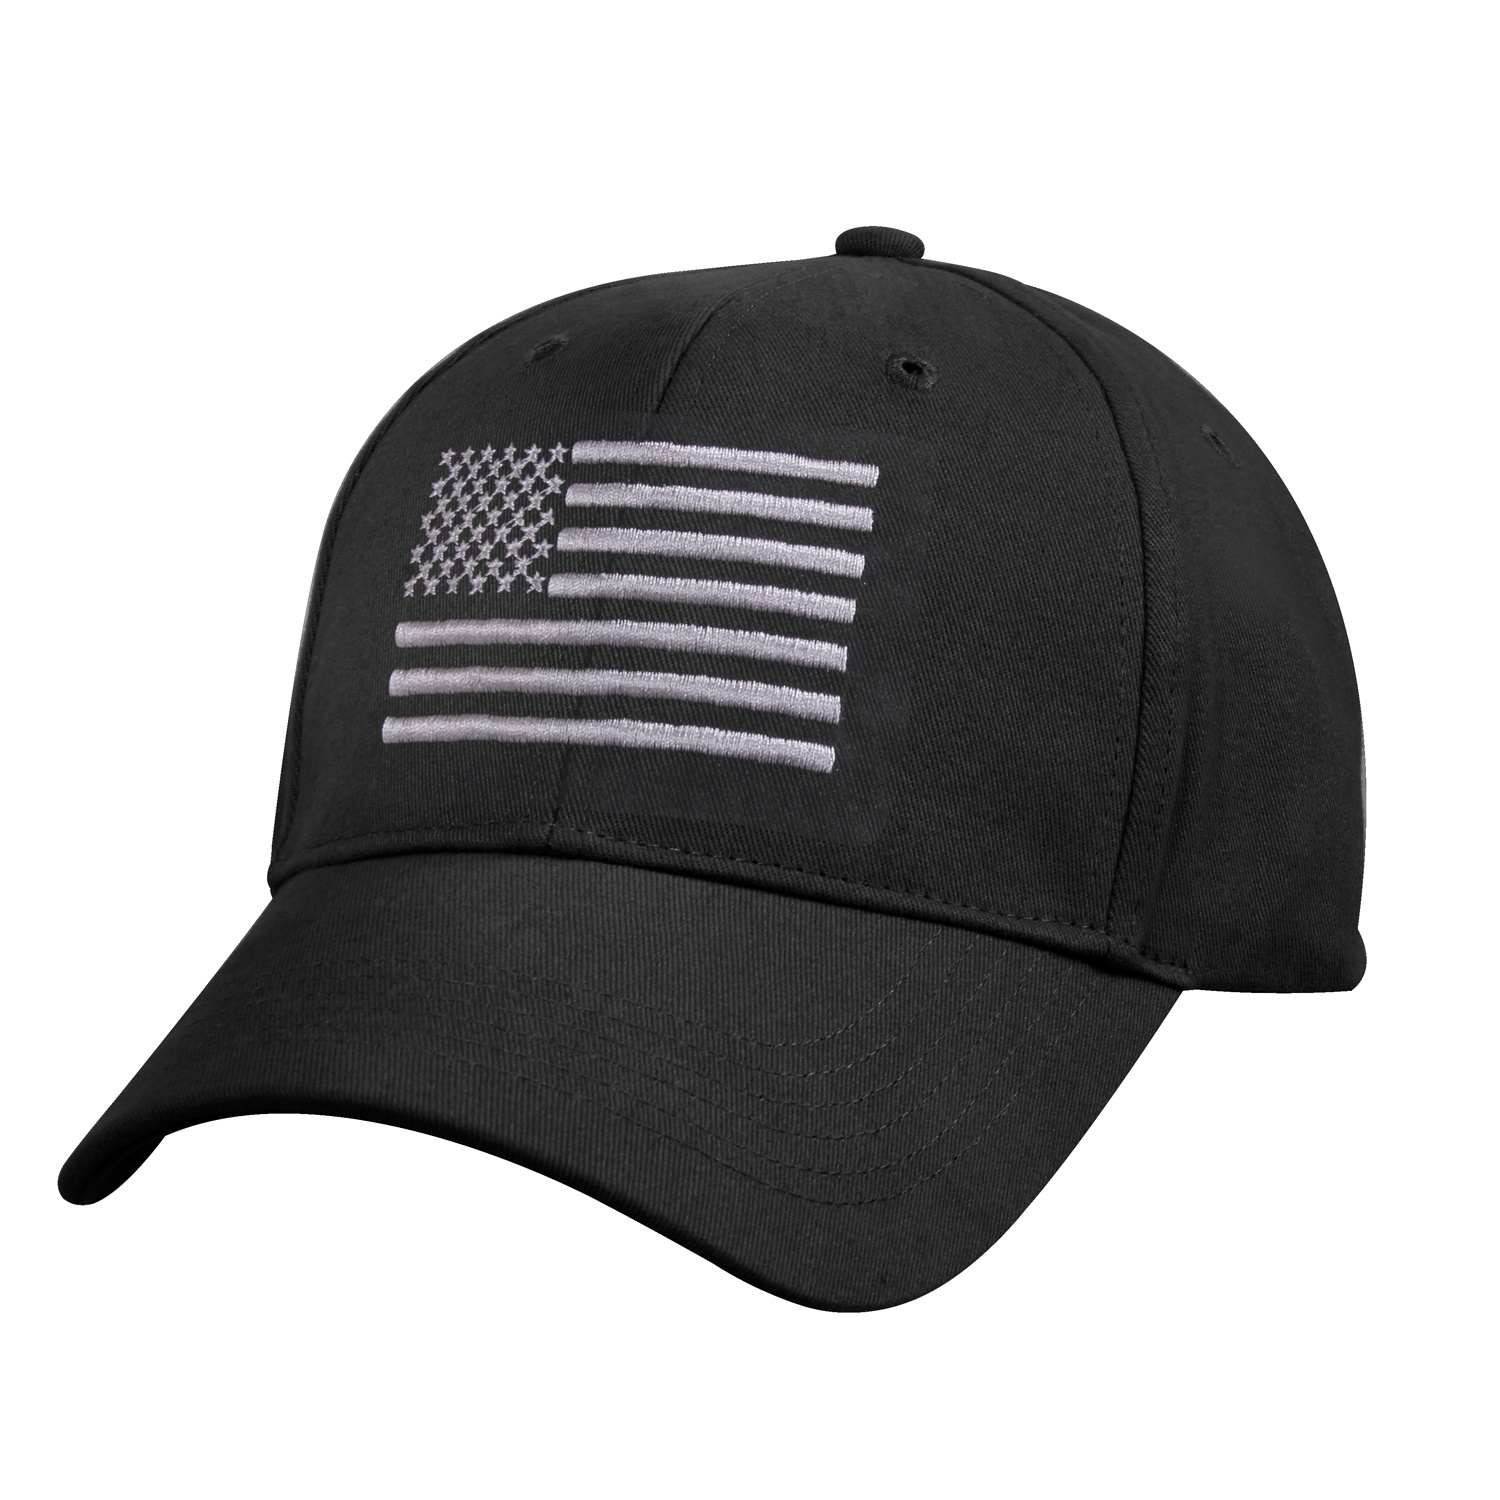 čepice s vlajkou USA černá/stříbrná